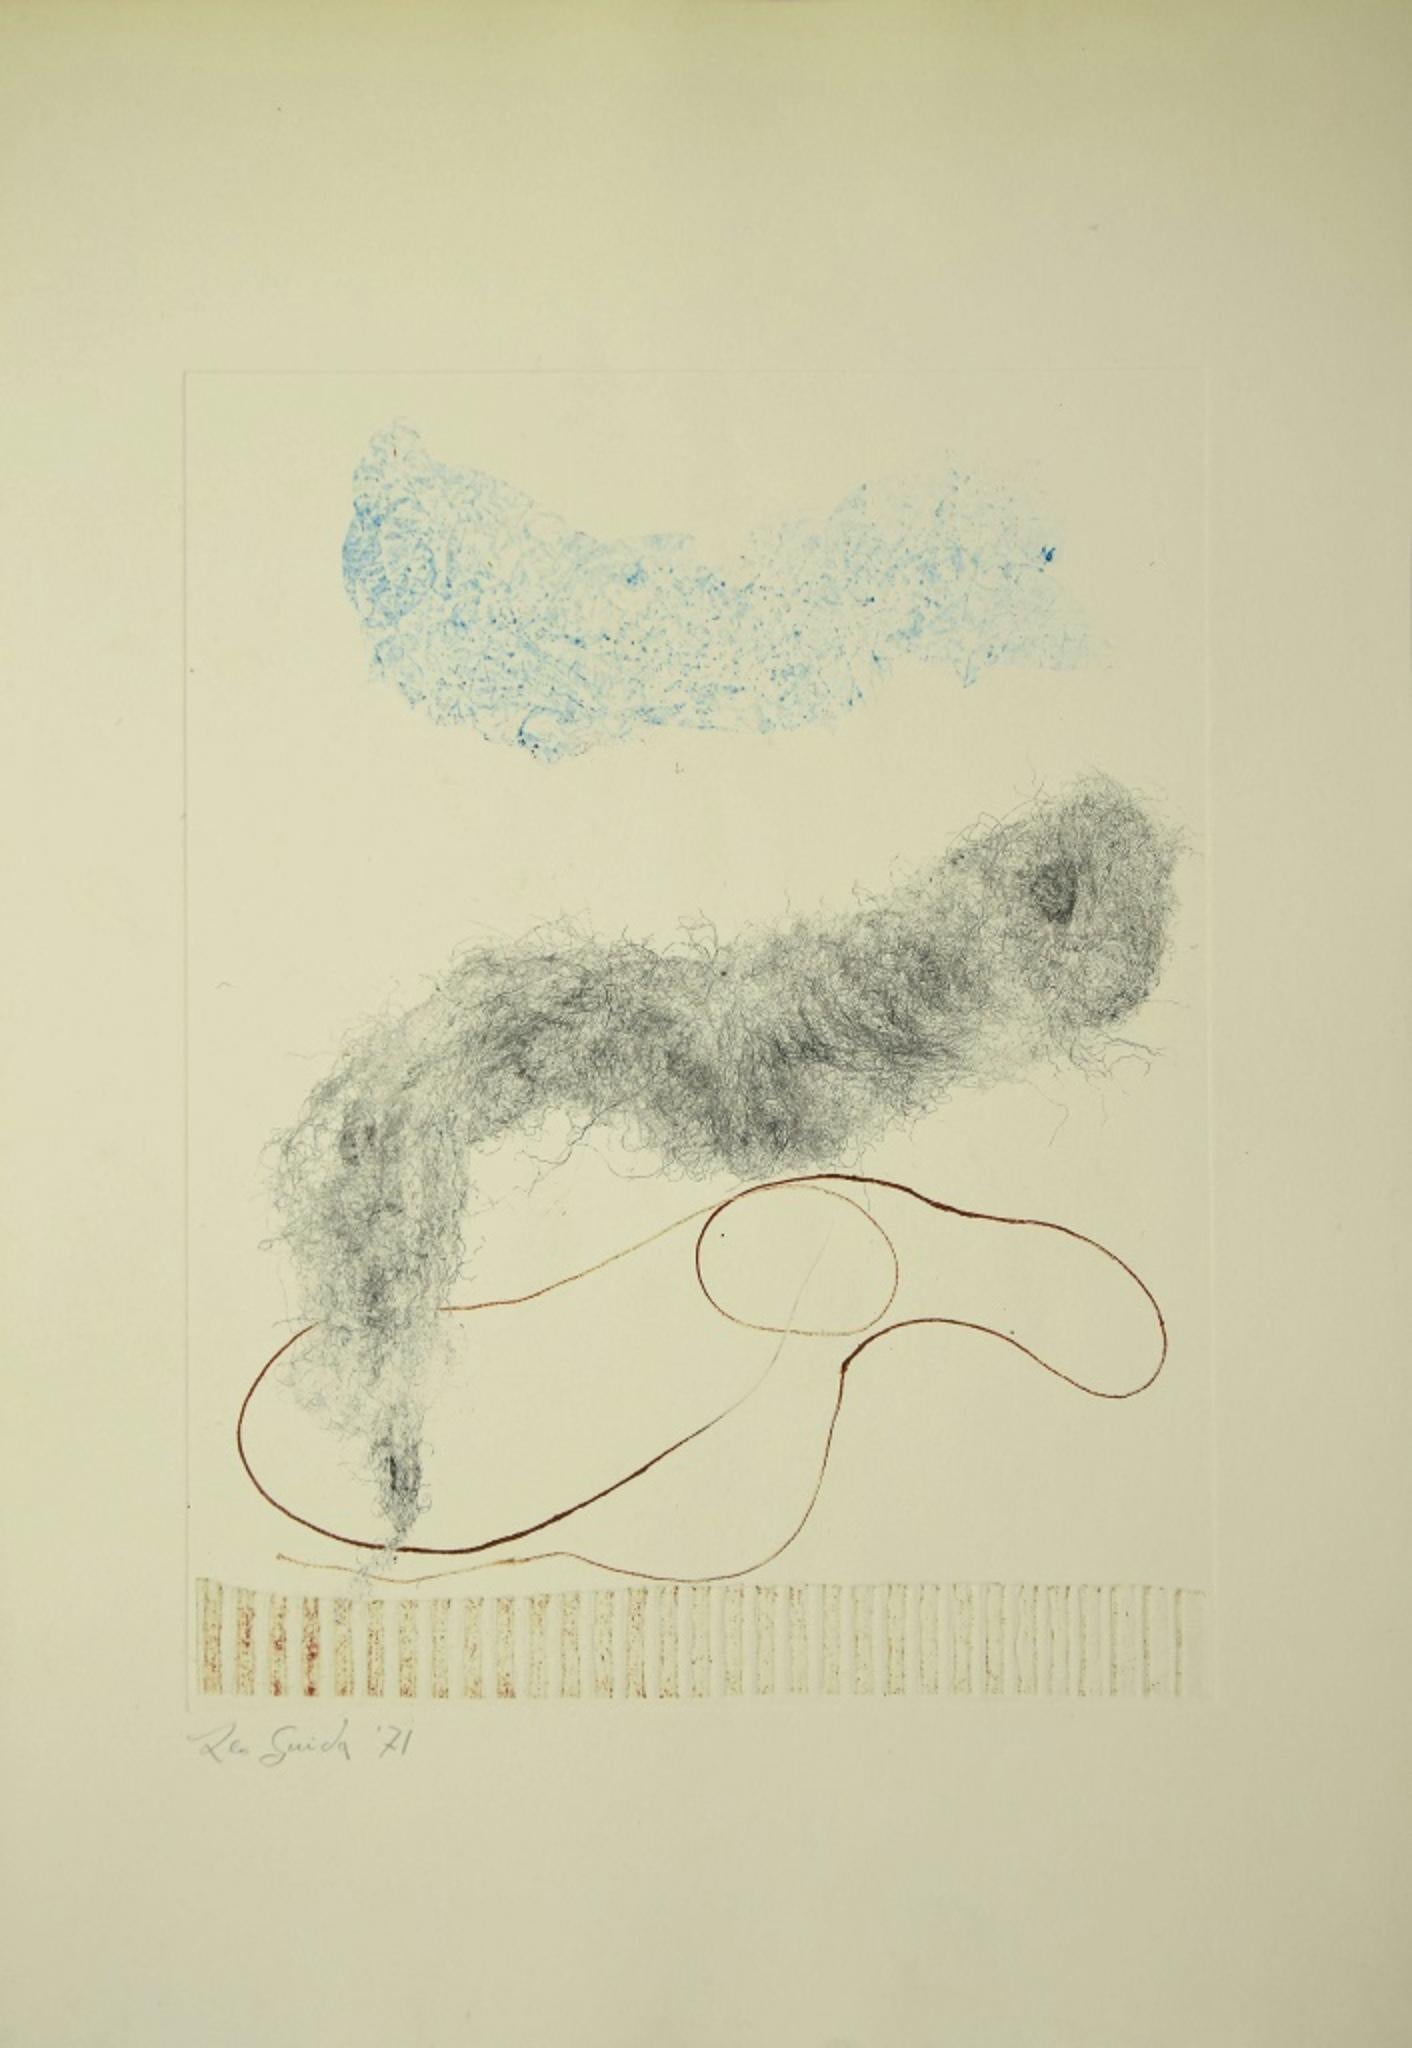 Composition 1971 ist ein originales zeitgenössisches Kunstwerk des italienischen Künstlers Leo Guida aus dem Jahr 1971.

Original-Radierung und Mischtechnik auf Papier. Bildabmessungen: 32 x 24,5 cm

Vom Künstler mit Bleistift in der unteren linken